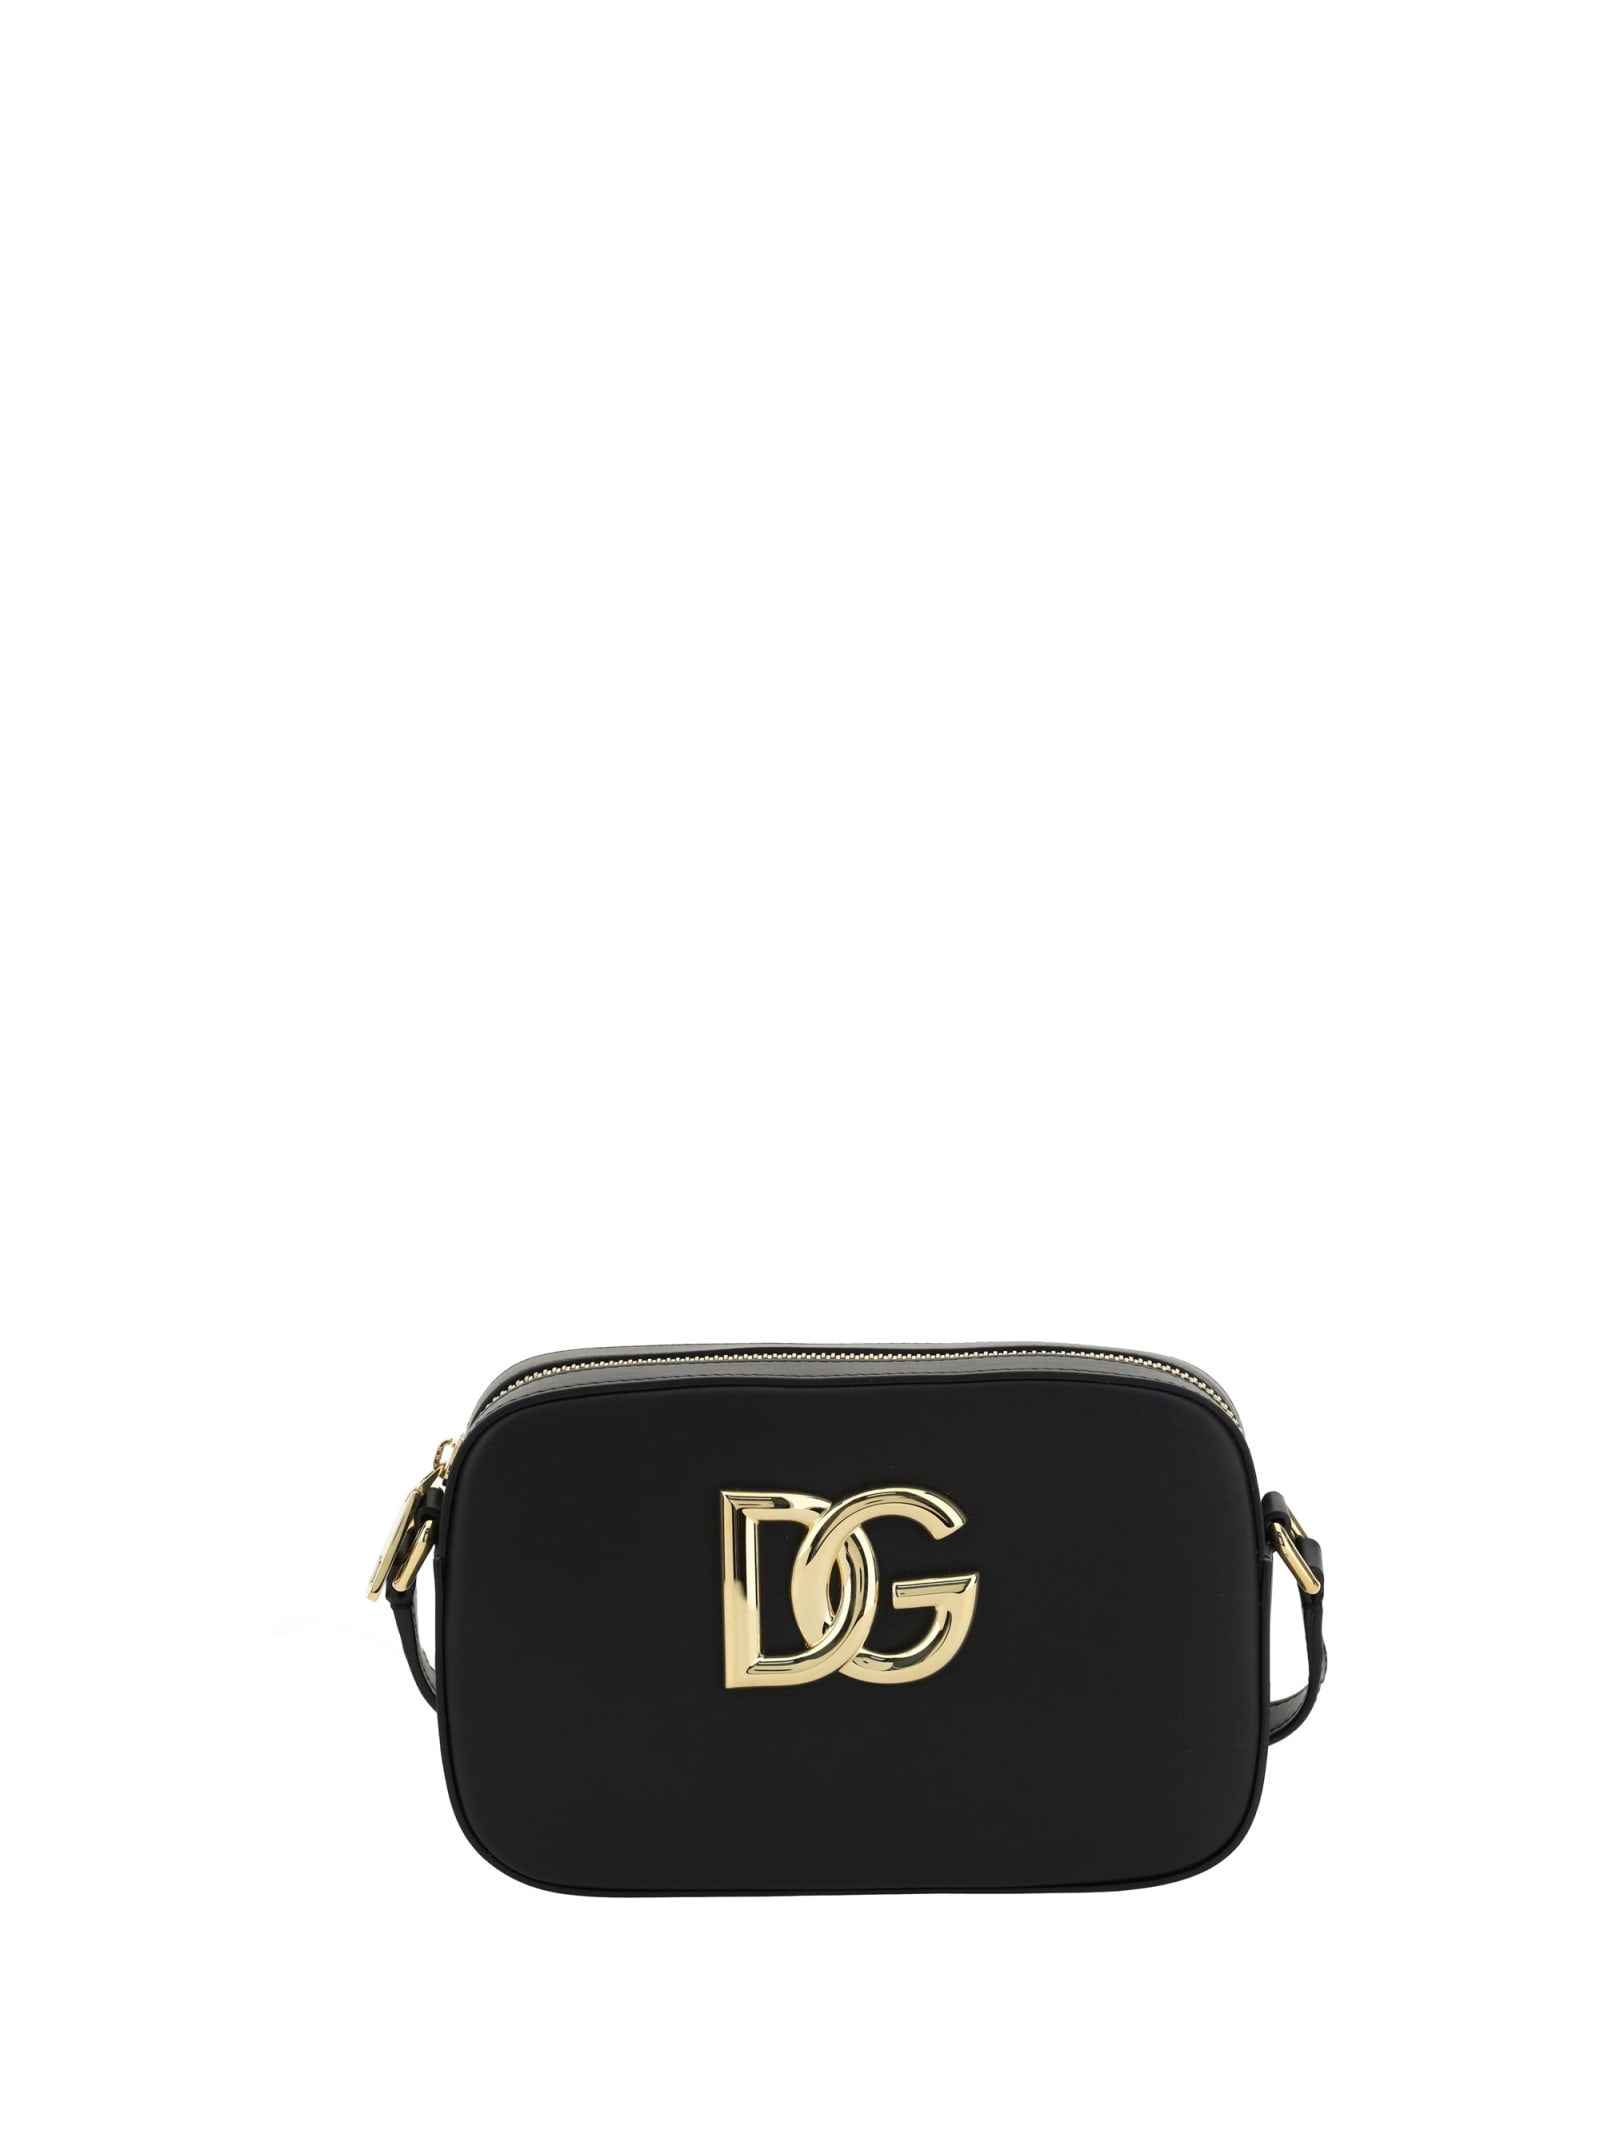 Dolce & Gabbana Camera Bag